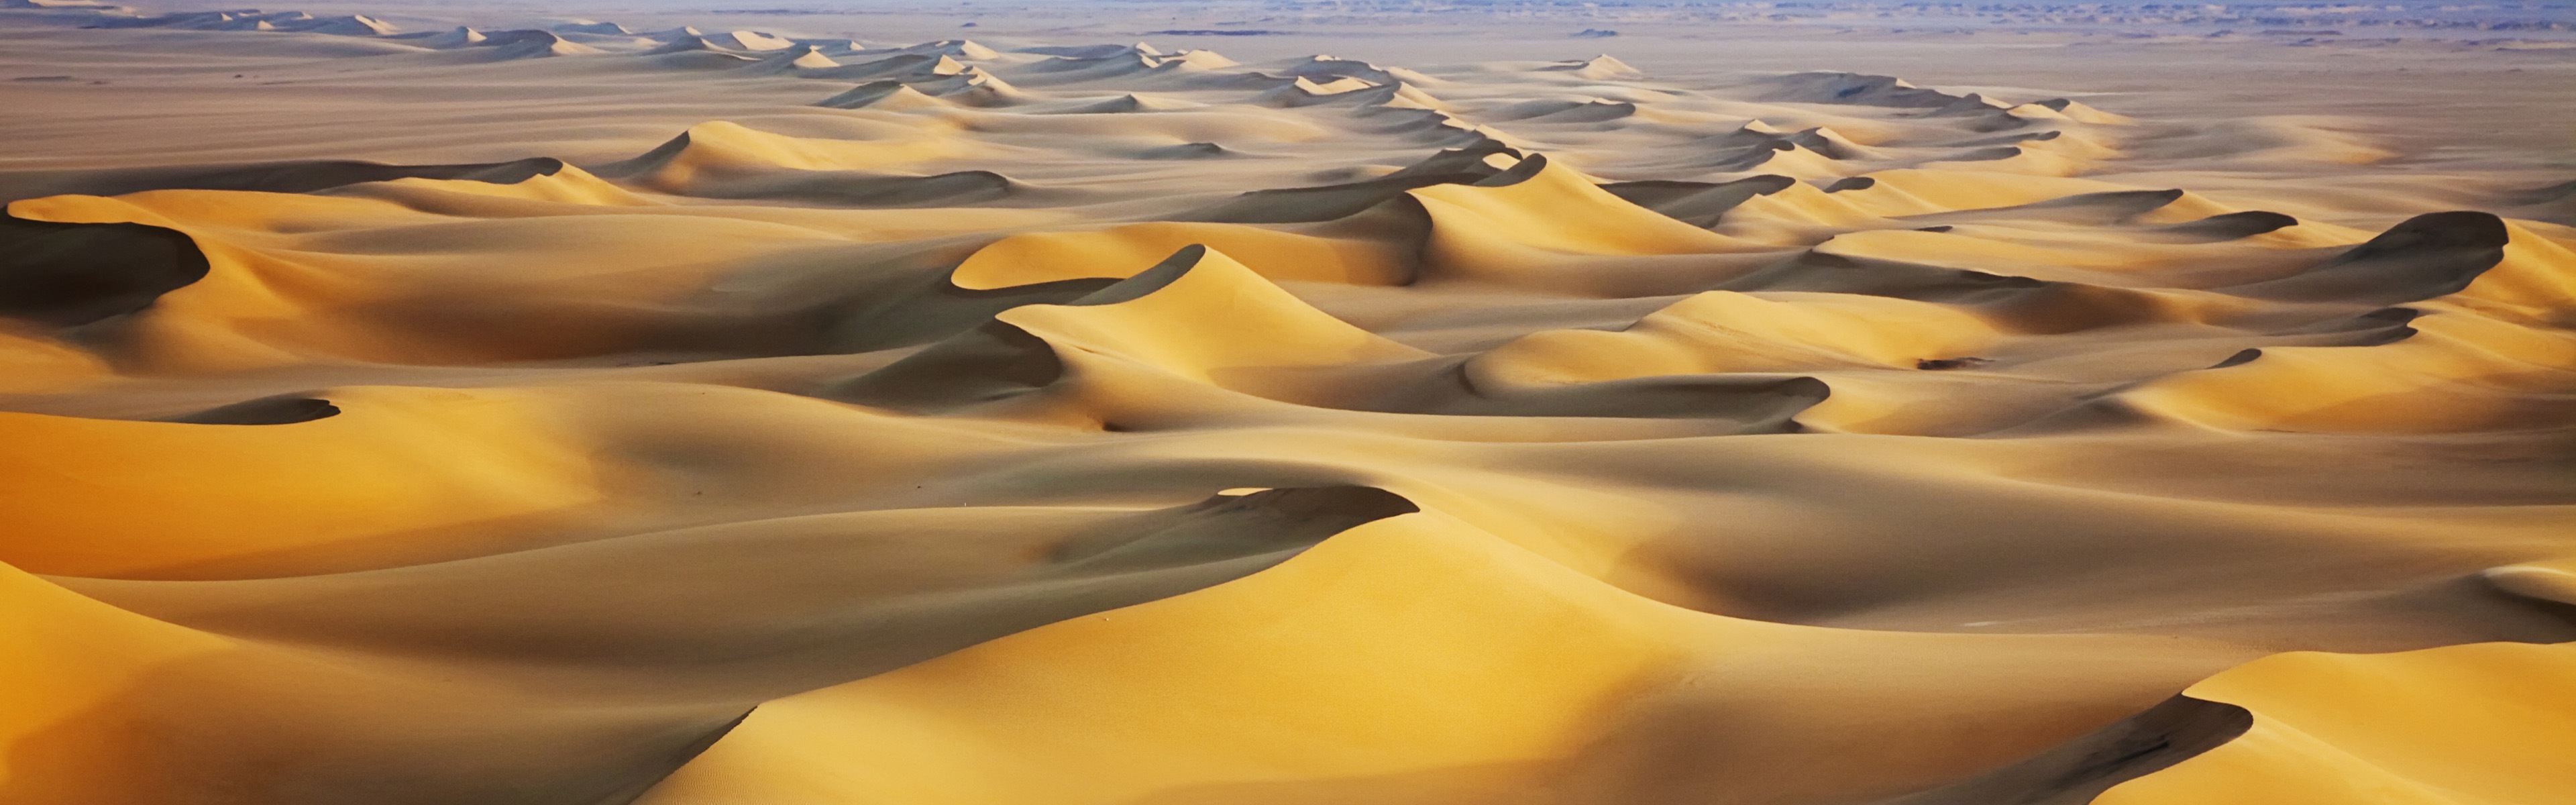 暑くて乾燥した砂漠、Windows 8のパノラマワイドスクリーンの壁紙 #4 - 3840x1200